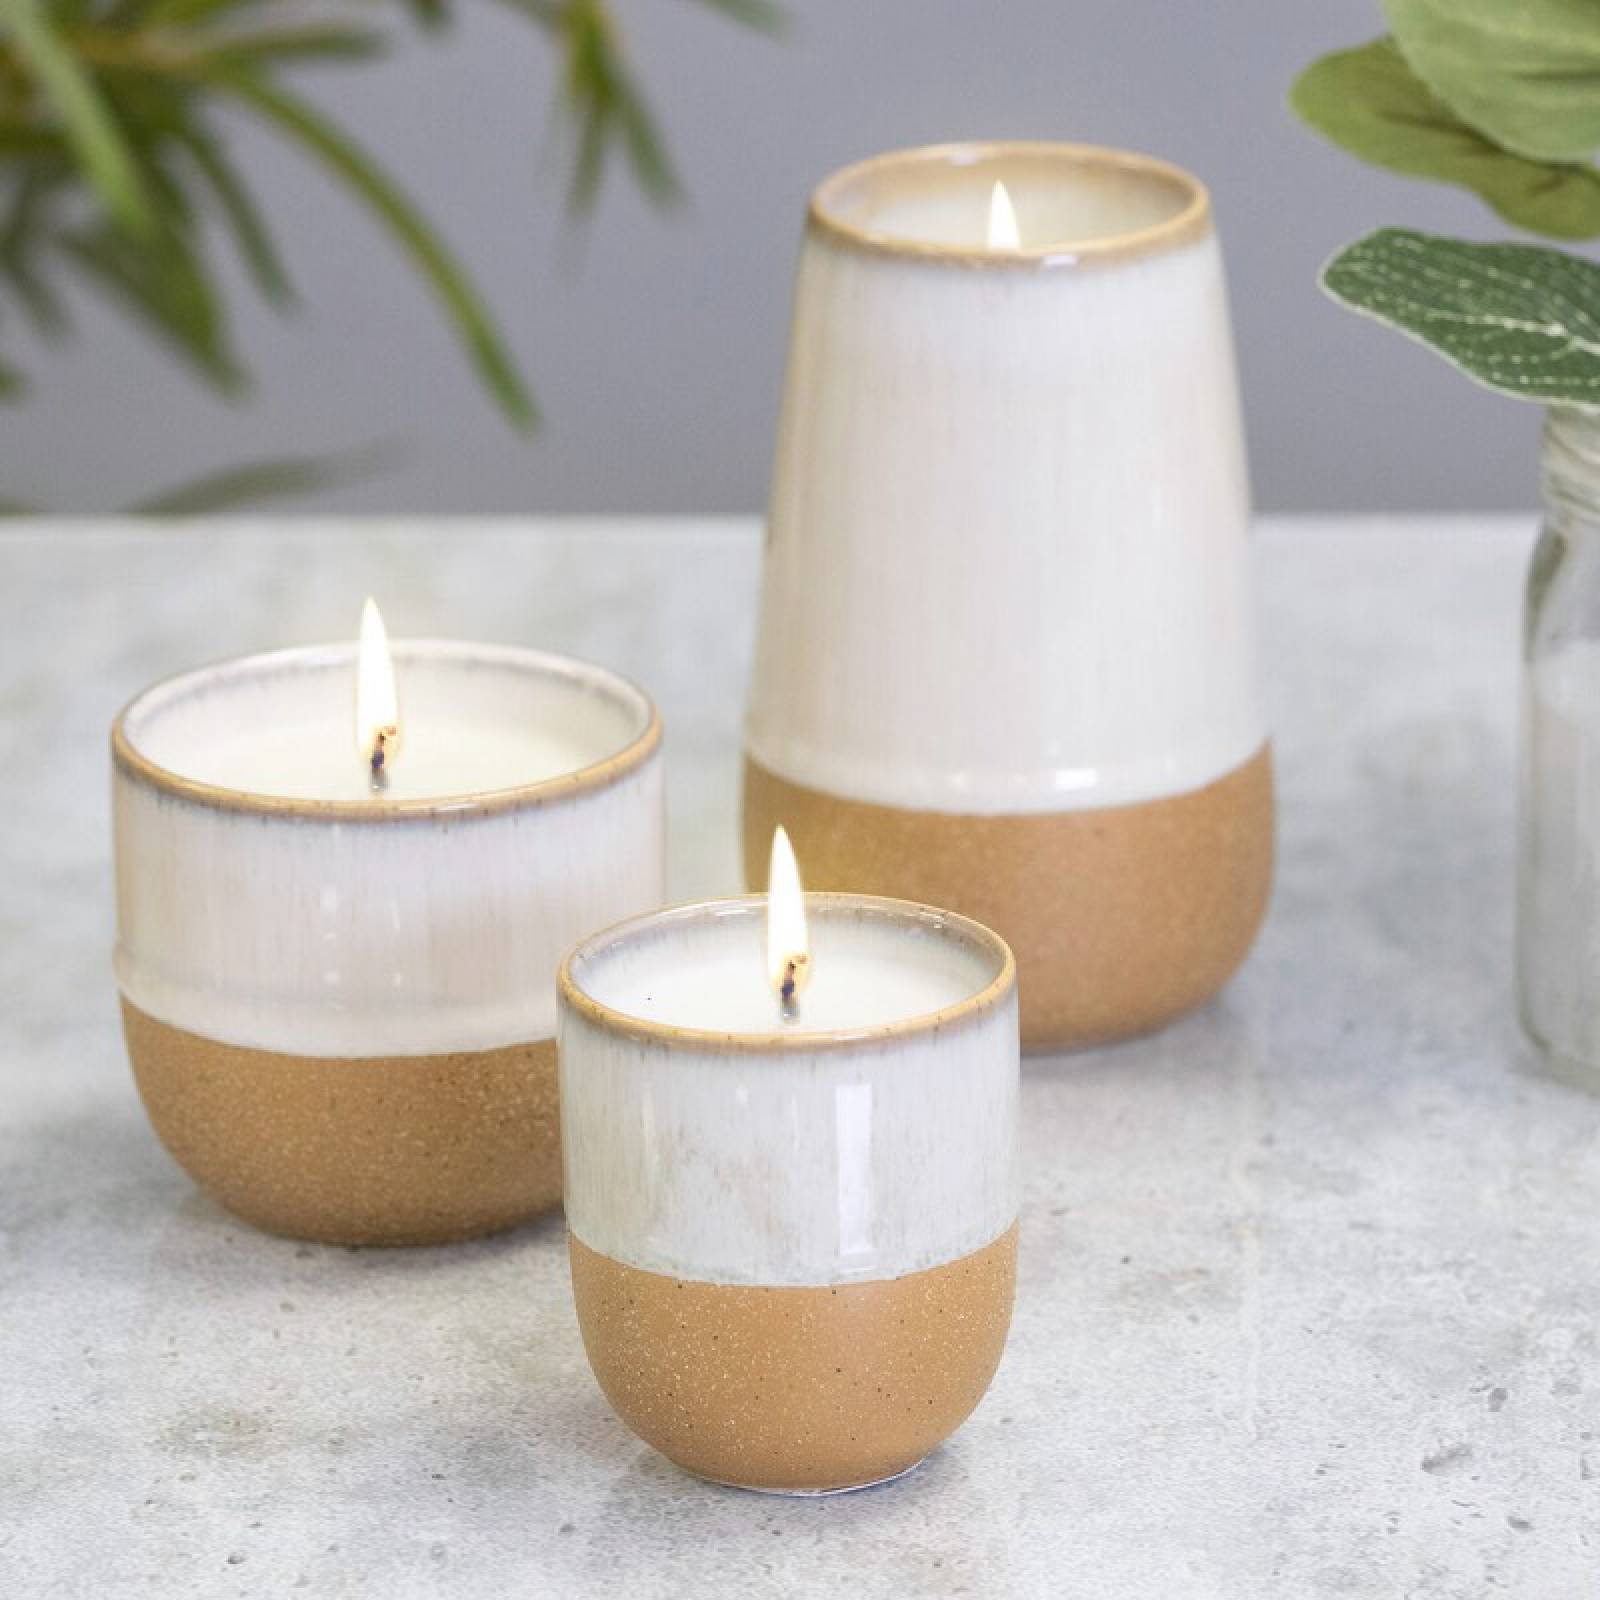 Glazed Ceramic Pot With Soy Candle - Jasmine & Bamboo 170g thumbnails